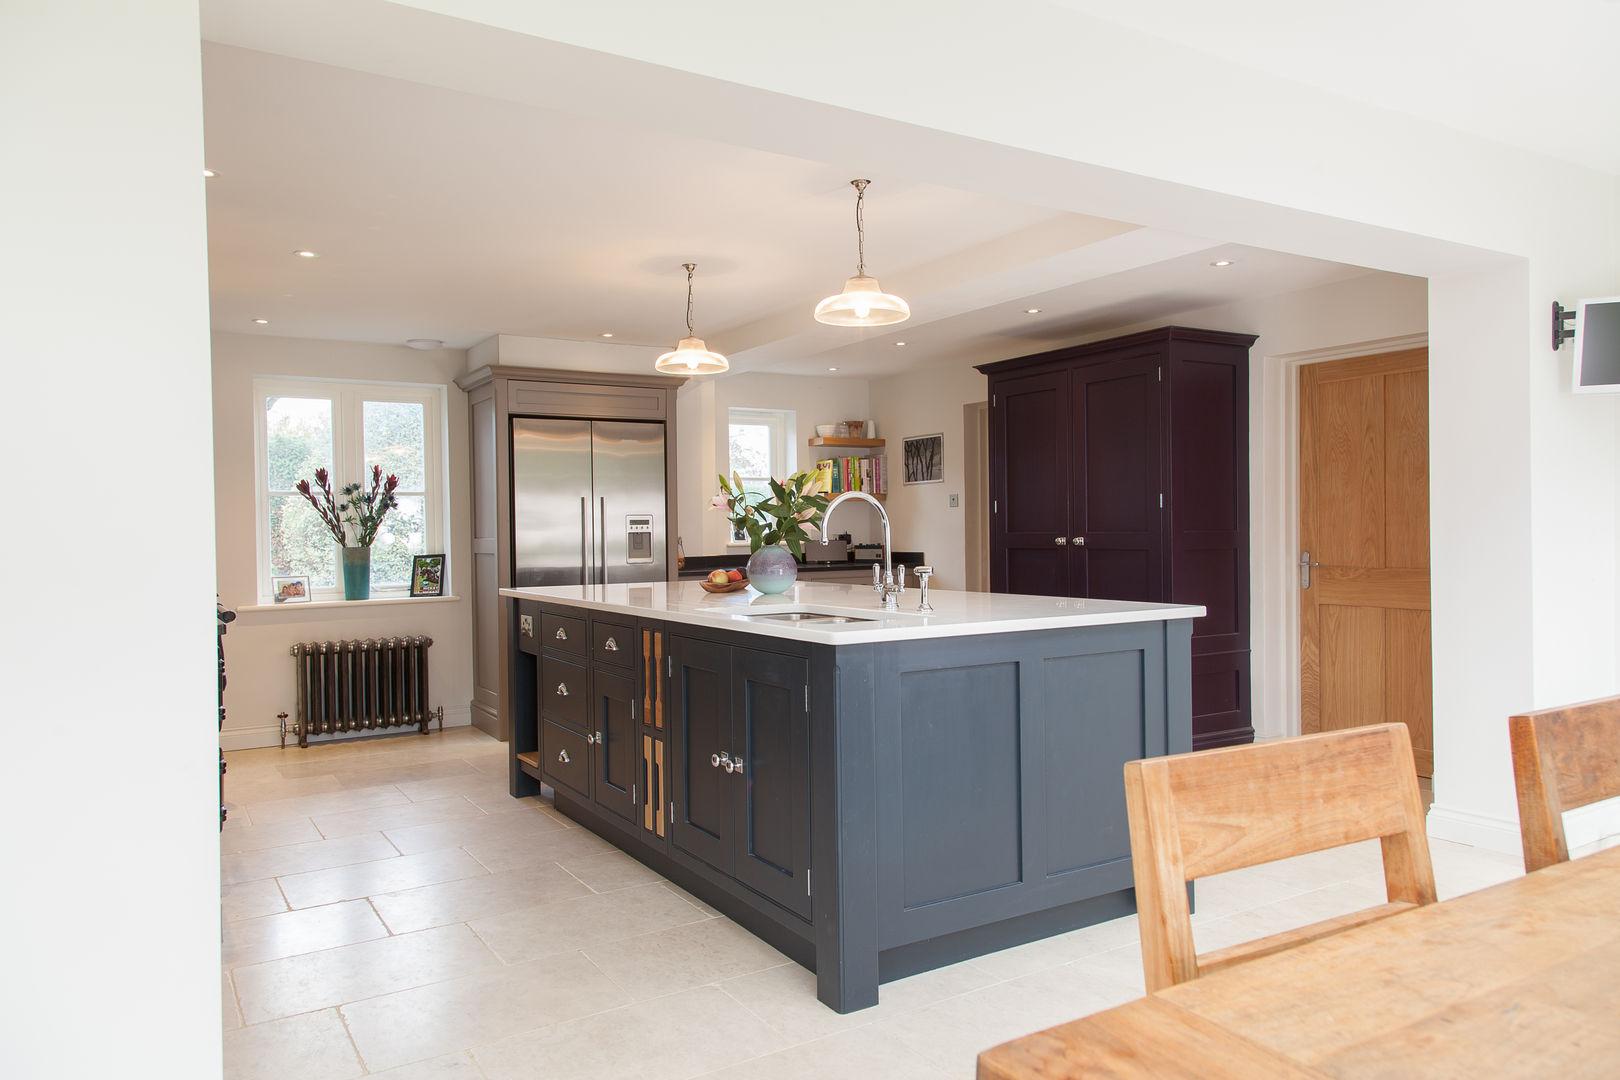 Surrey Kitchen Lewis Alderson Classic style kitchen Cabinets & shelves